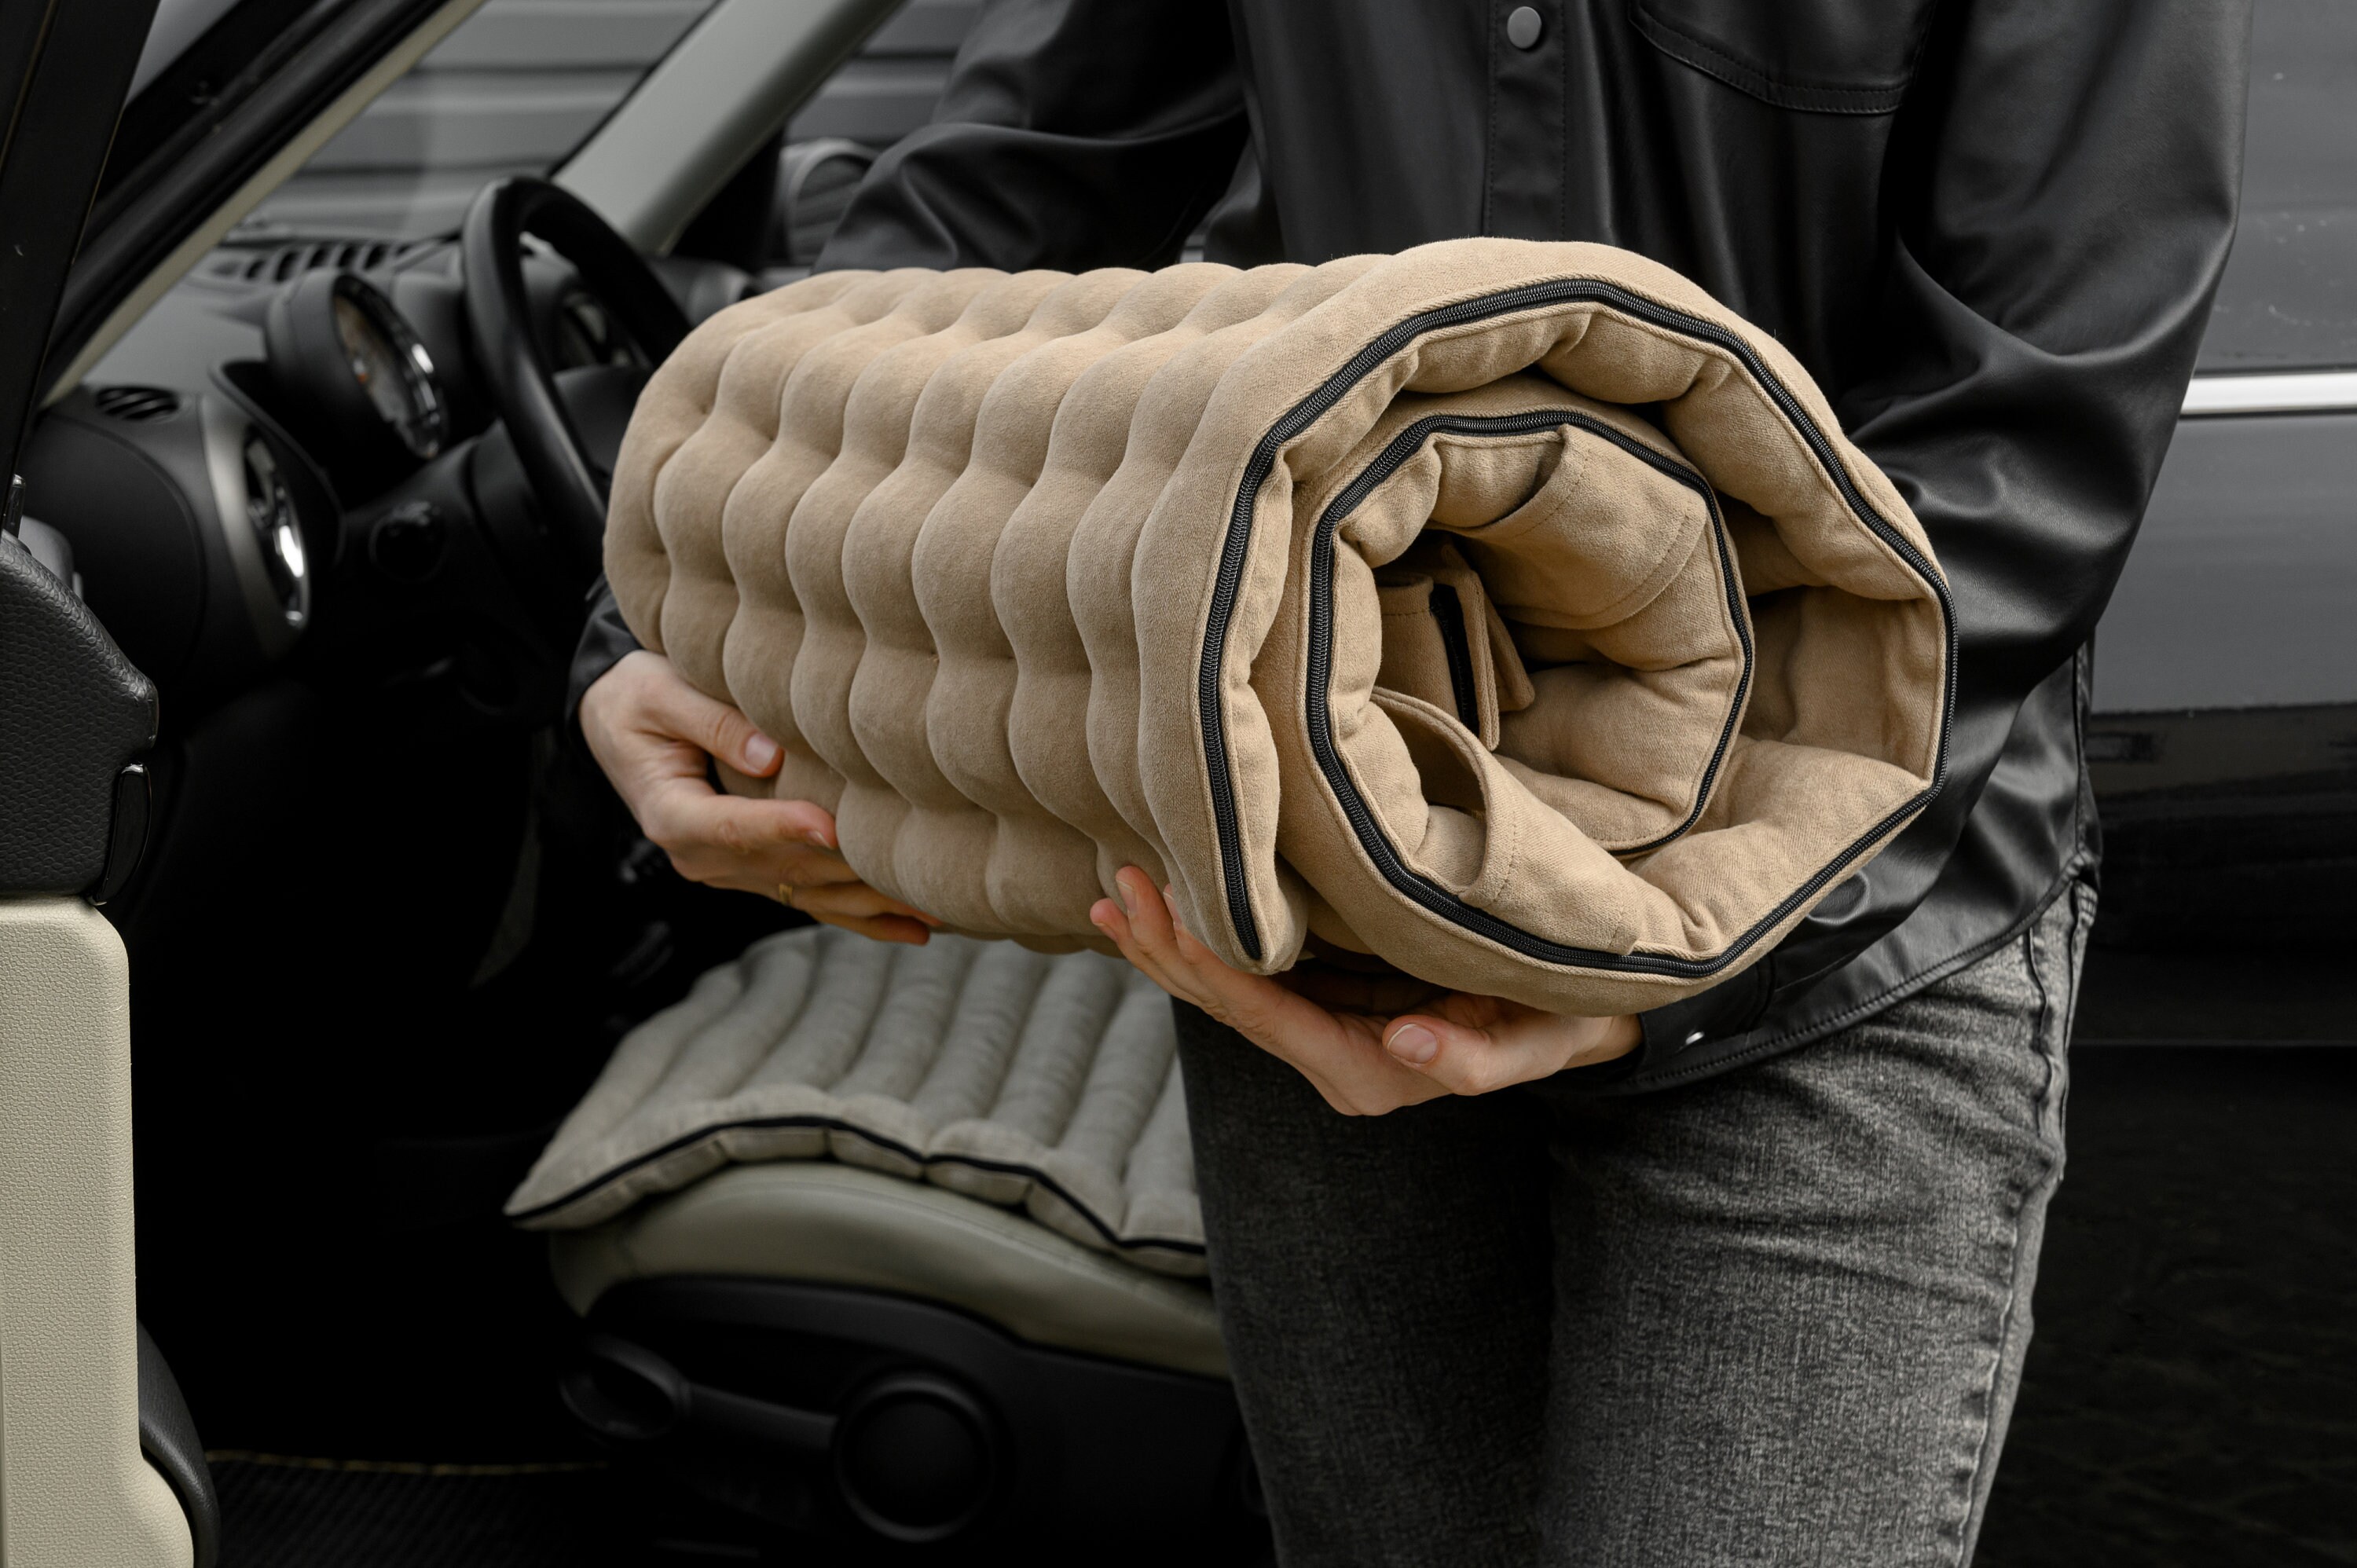 Leinen Autositzbezug gefüllt Bio Buchweizen Hulls in Leinen 100% Stoff  Massage Sitzbezug Buchweizen Bio umweltfreundliche Sitz Hand Made - .de